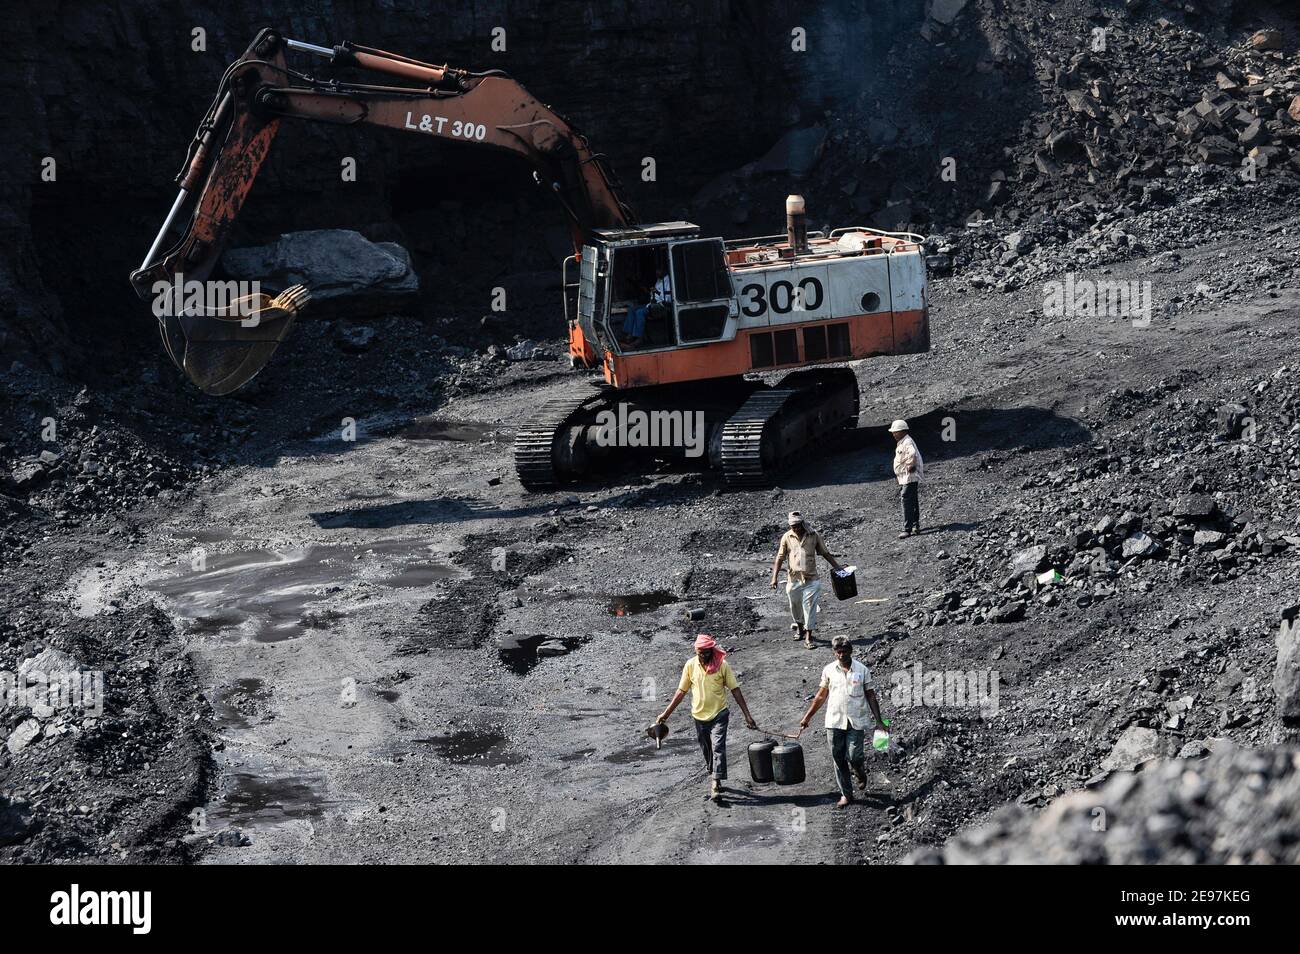 INDE Dhanbad, mine de charbon à ciel ouvert de BCCL Ltd une entreprise de CHARBON INDE , L&T digger / INDIEN Dhanbad , offenser Kohle Tagebau von BCCL Ltd. Ein Tochterunternehmen von Coal India Banque D'Images